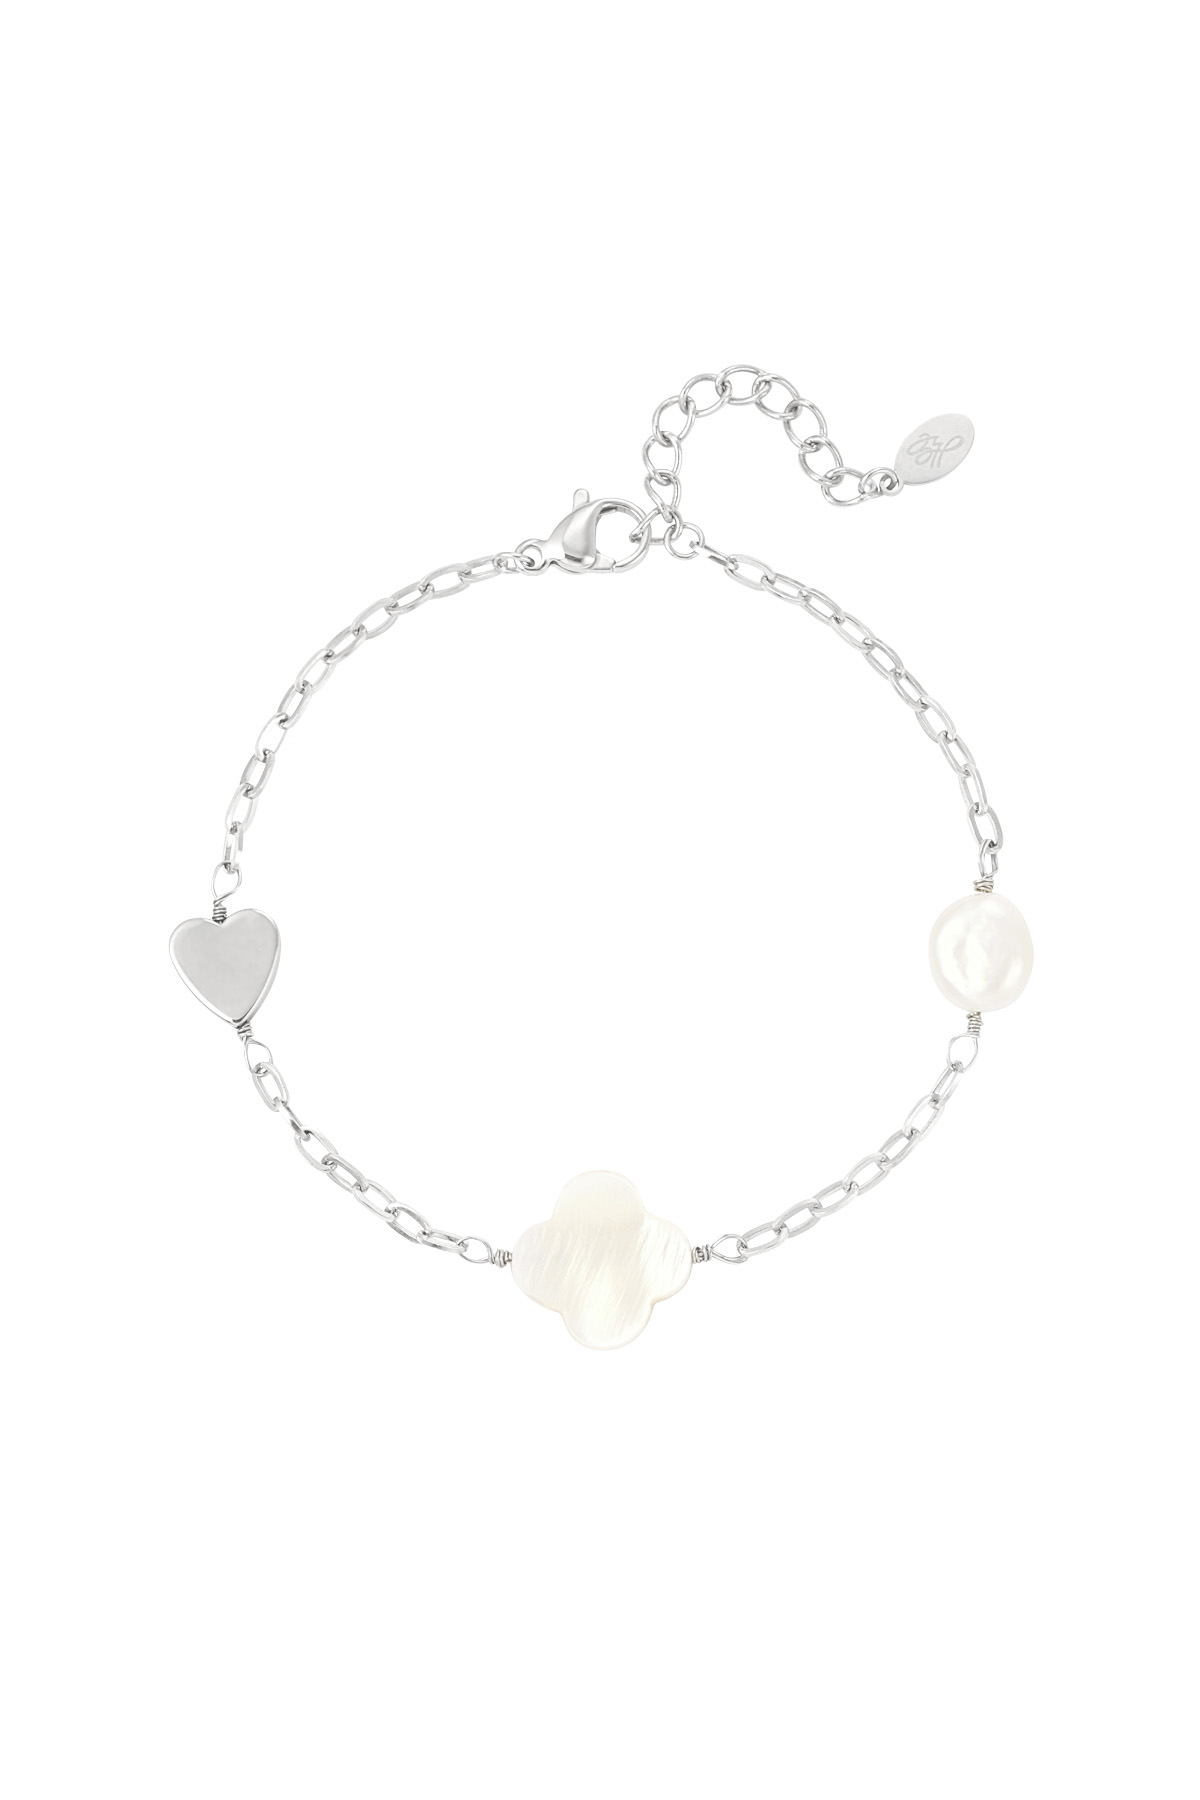 Bracciale perla, cuore e trifoglio - argento 